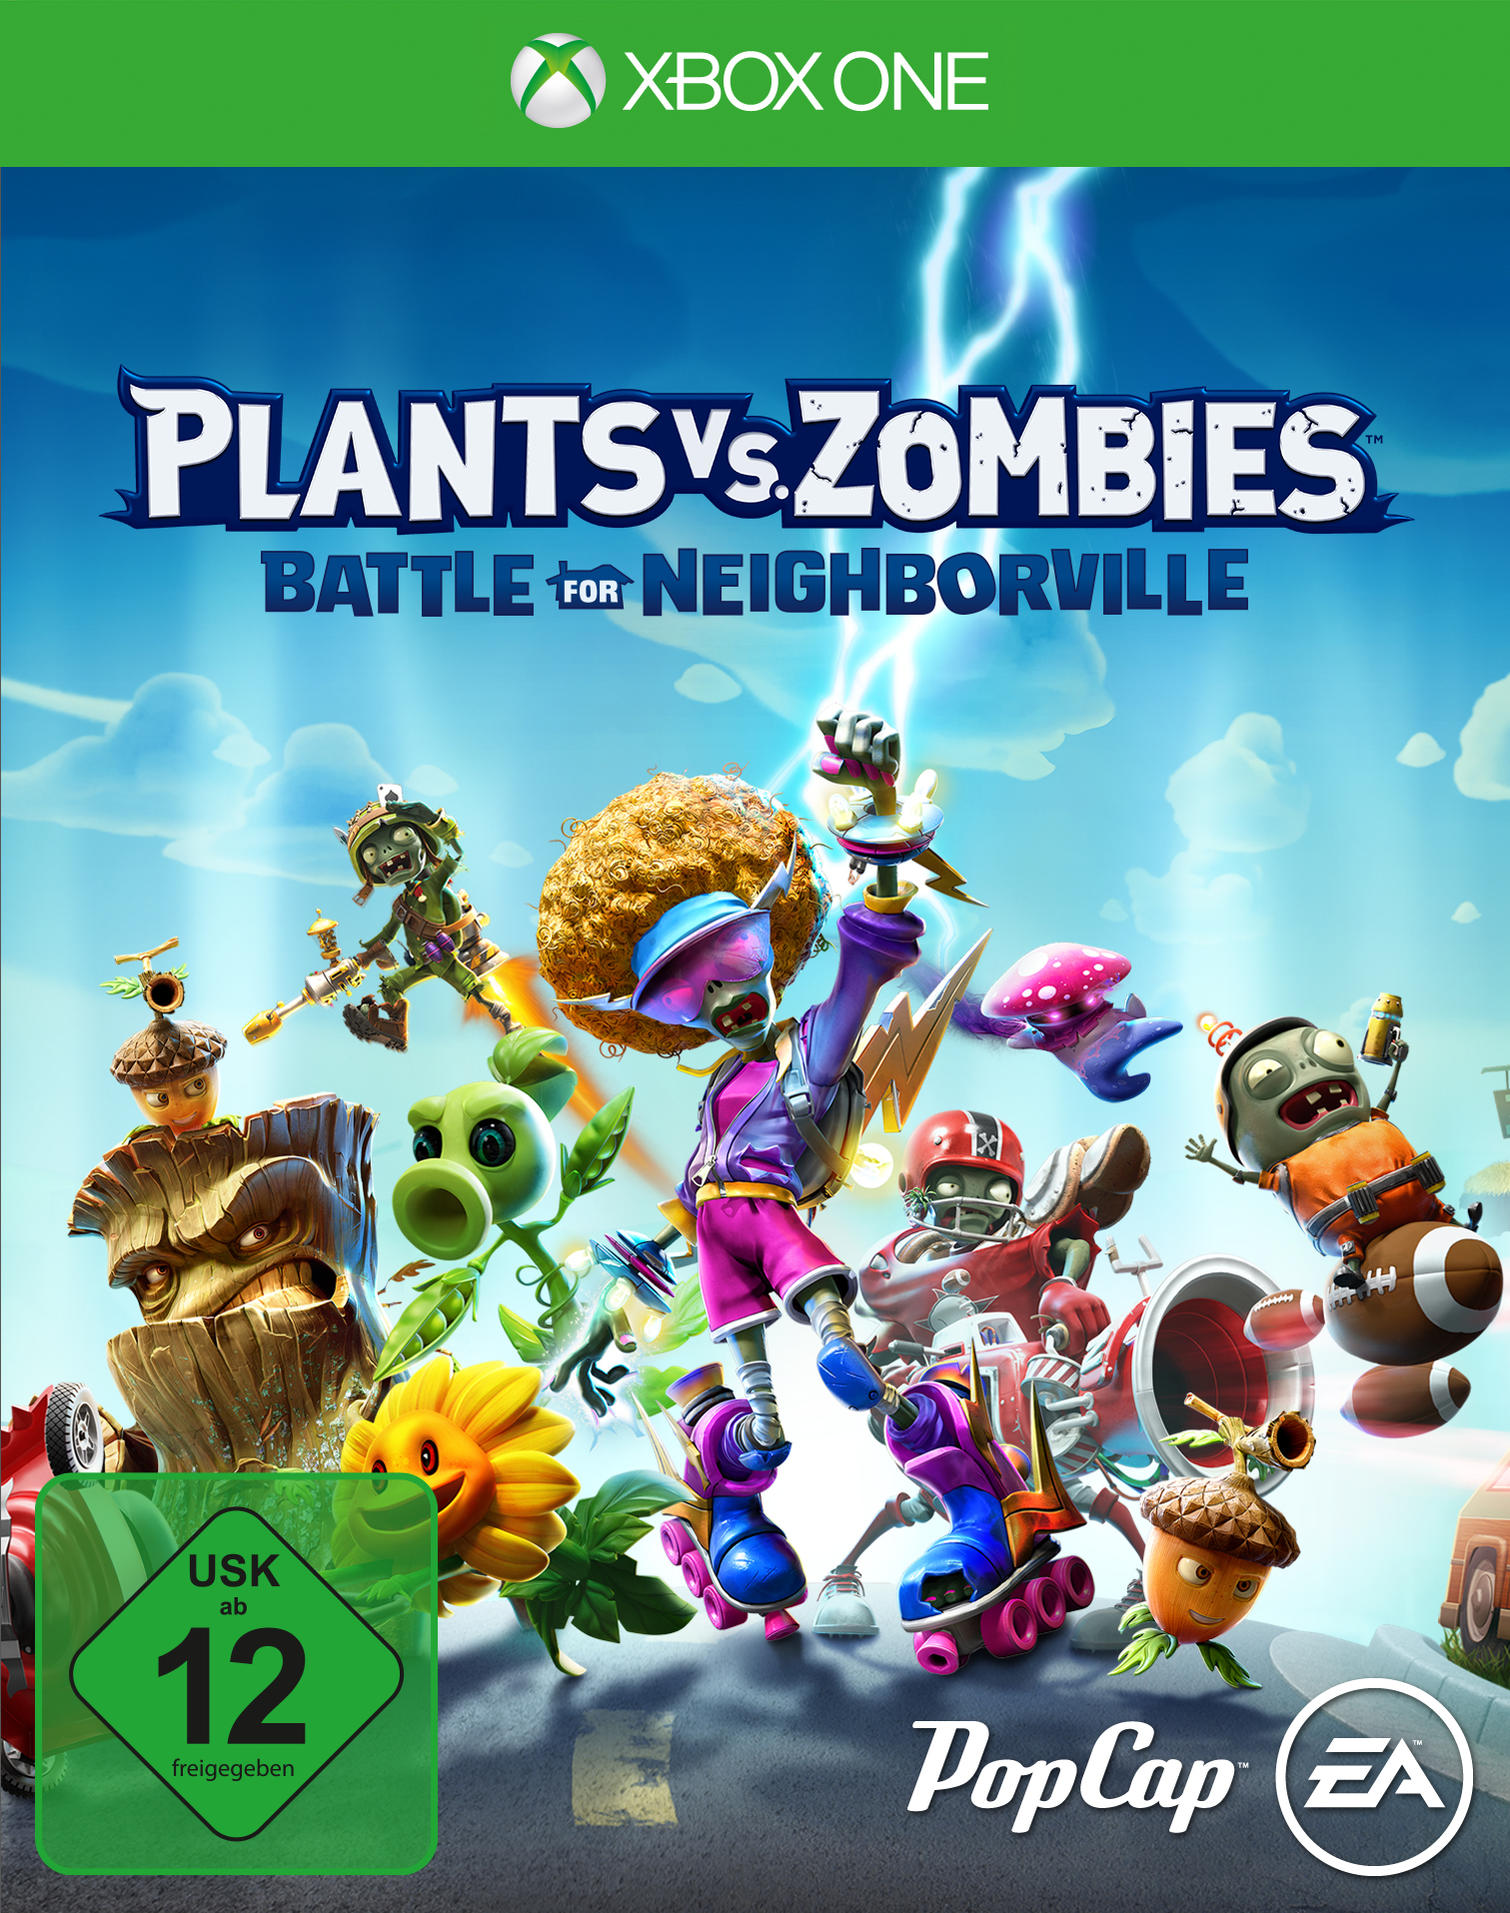 Plants vs. Zombies: Neighborville um - One] Schlacht [Xbox